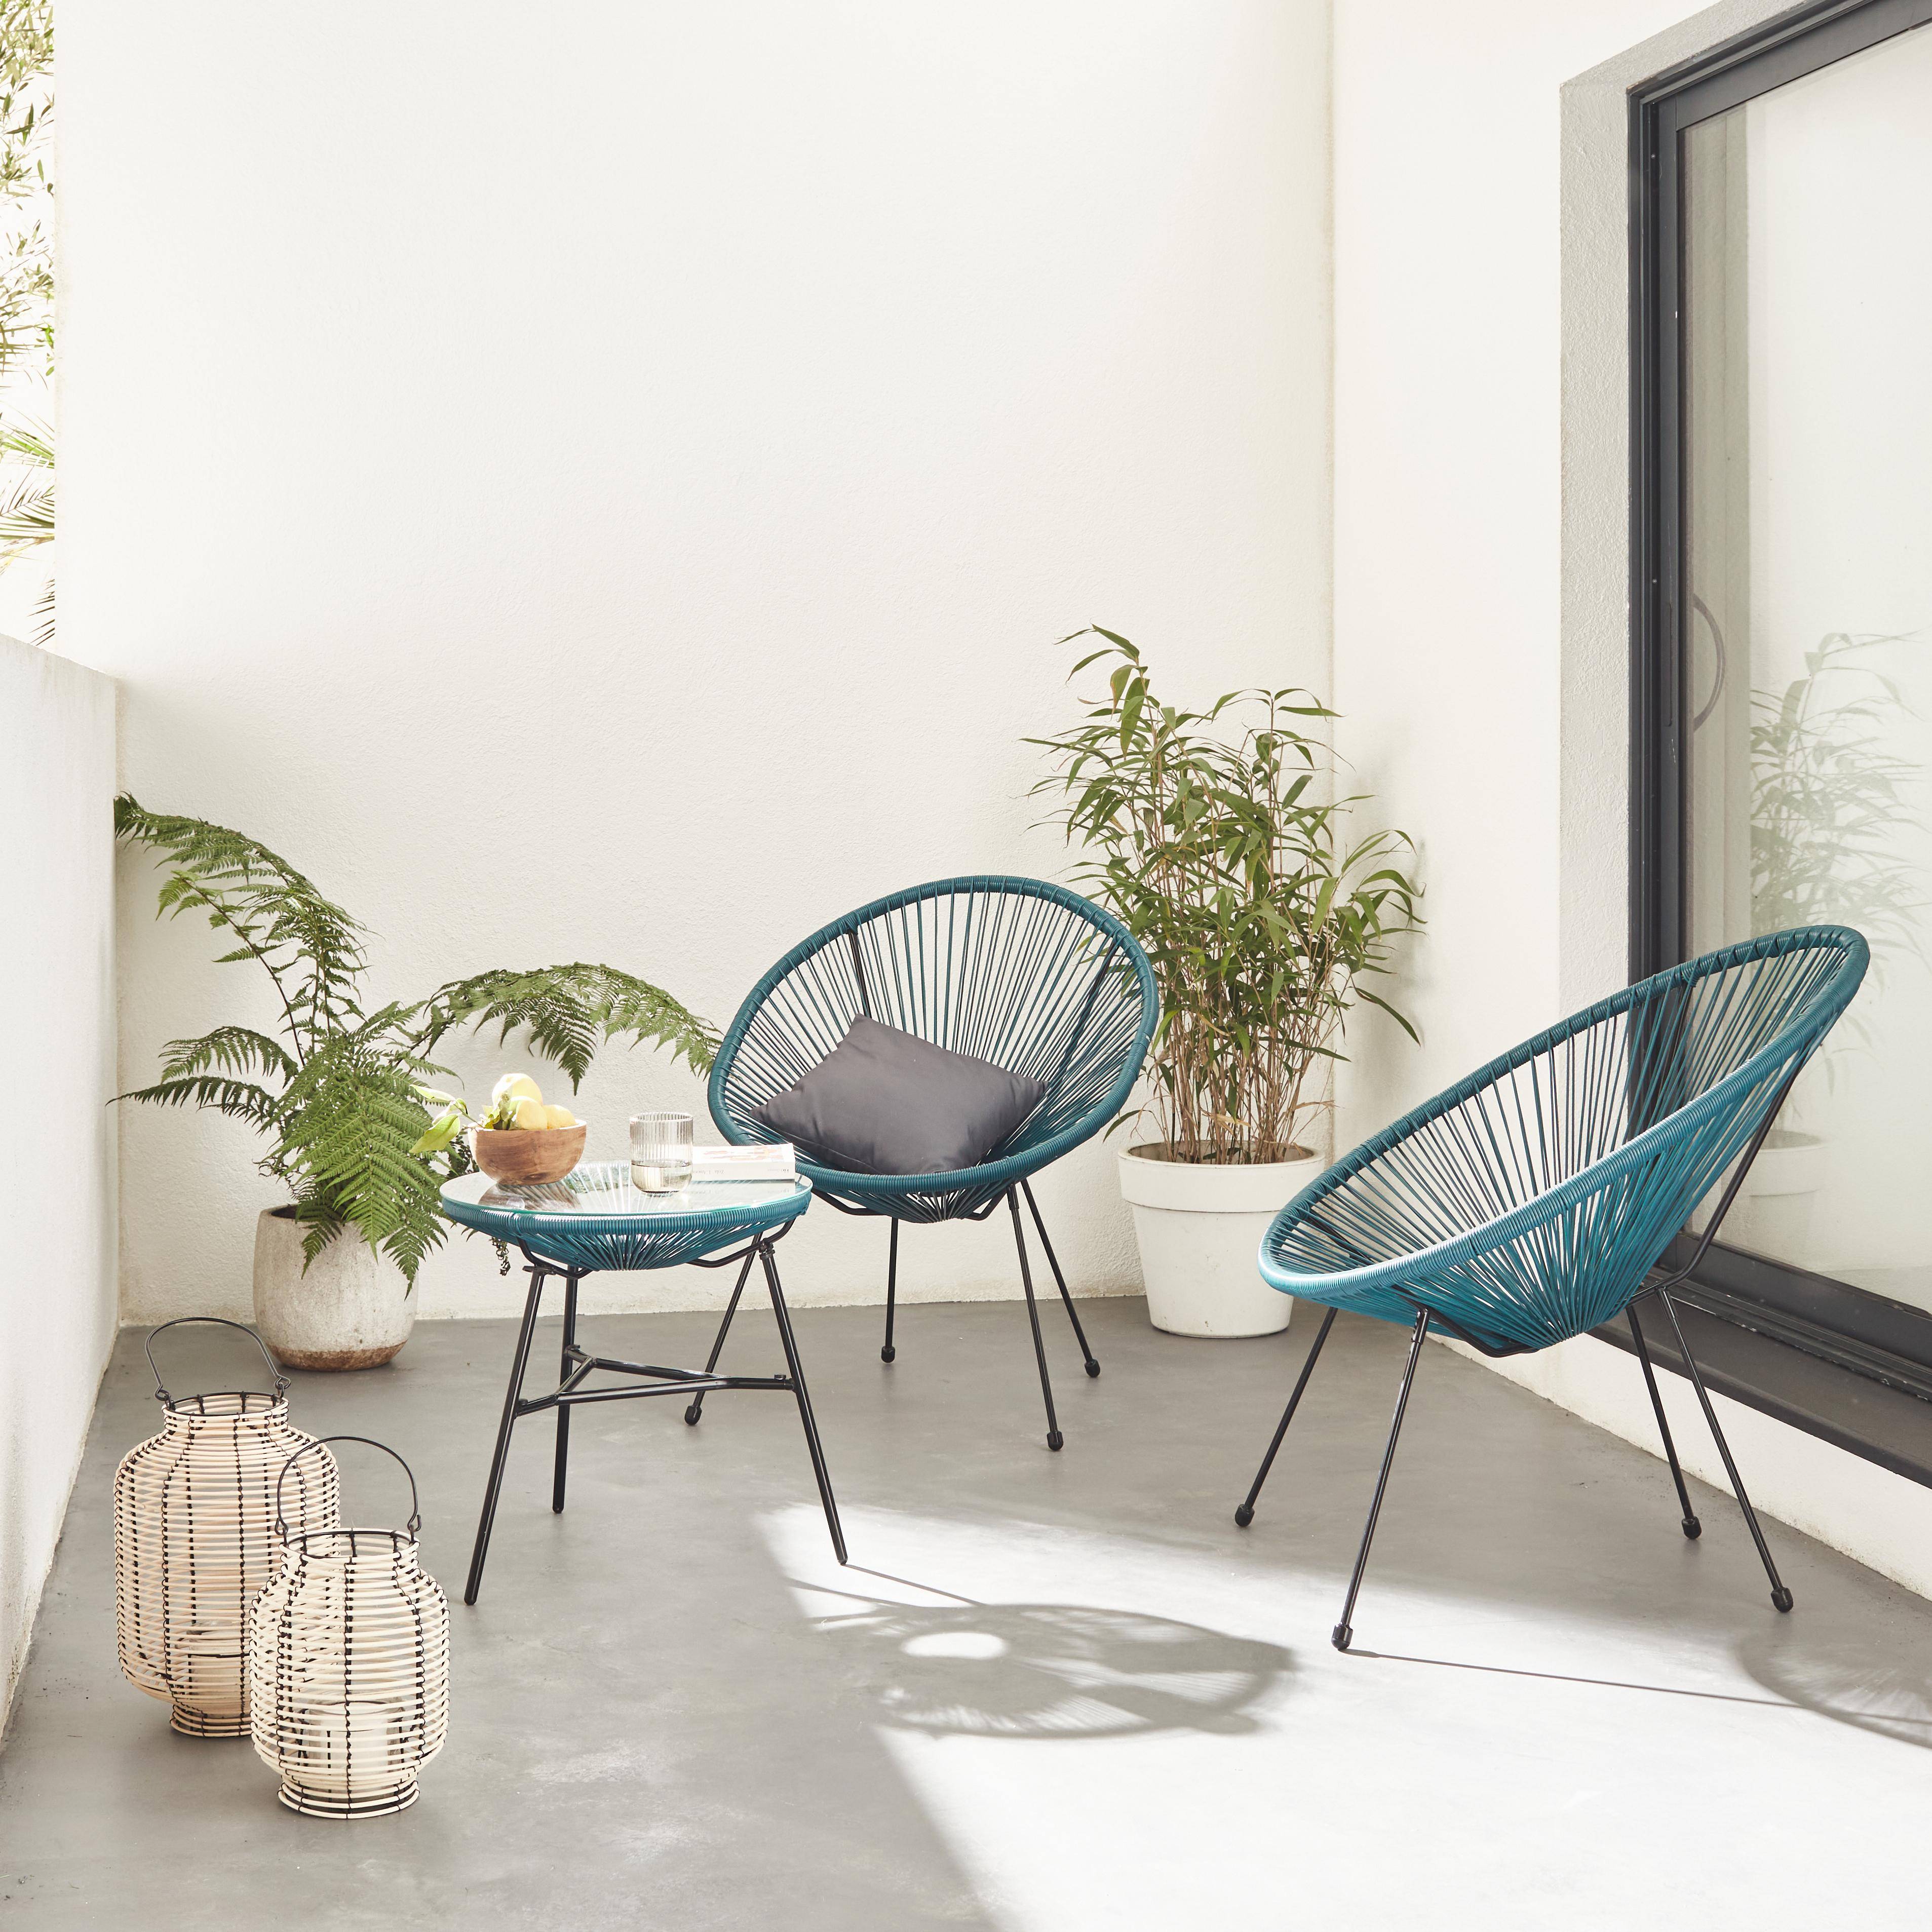 Lot de 2 fauteuils design Oeuf - Acapulco Bleu canard- Fauteuils 4 pieds design rétro, cordage plastique, intérieur / extérieur Photo1